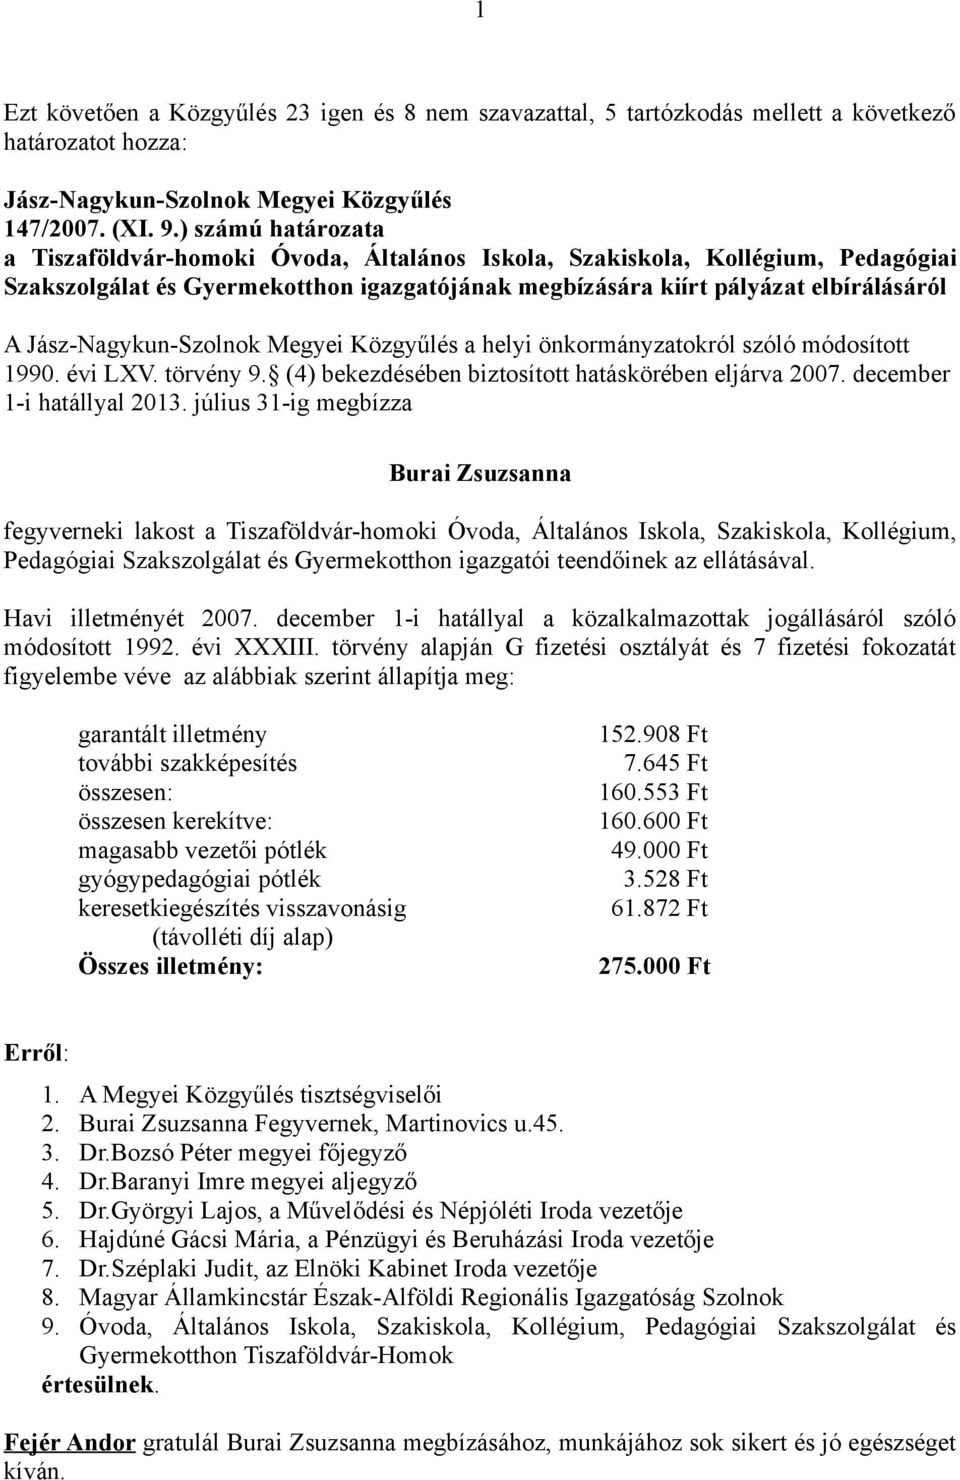 Jász-Nagykun-Szolnok Megyei Közgyűlés a helyi önkormányzatokról szóló módosított 1990. évi LXV. törvény 9. (4) bekezdésében biztosított hatáskörében eljárva 2007. december 1-i hatállyal 2013.